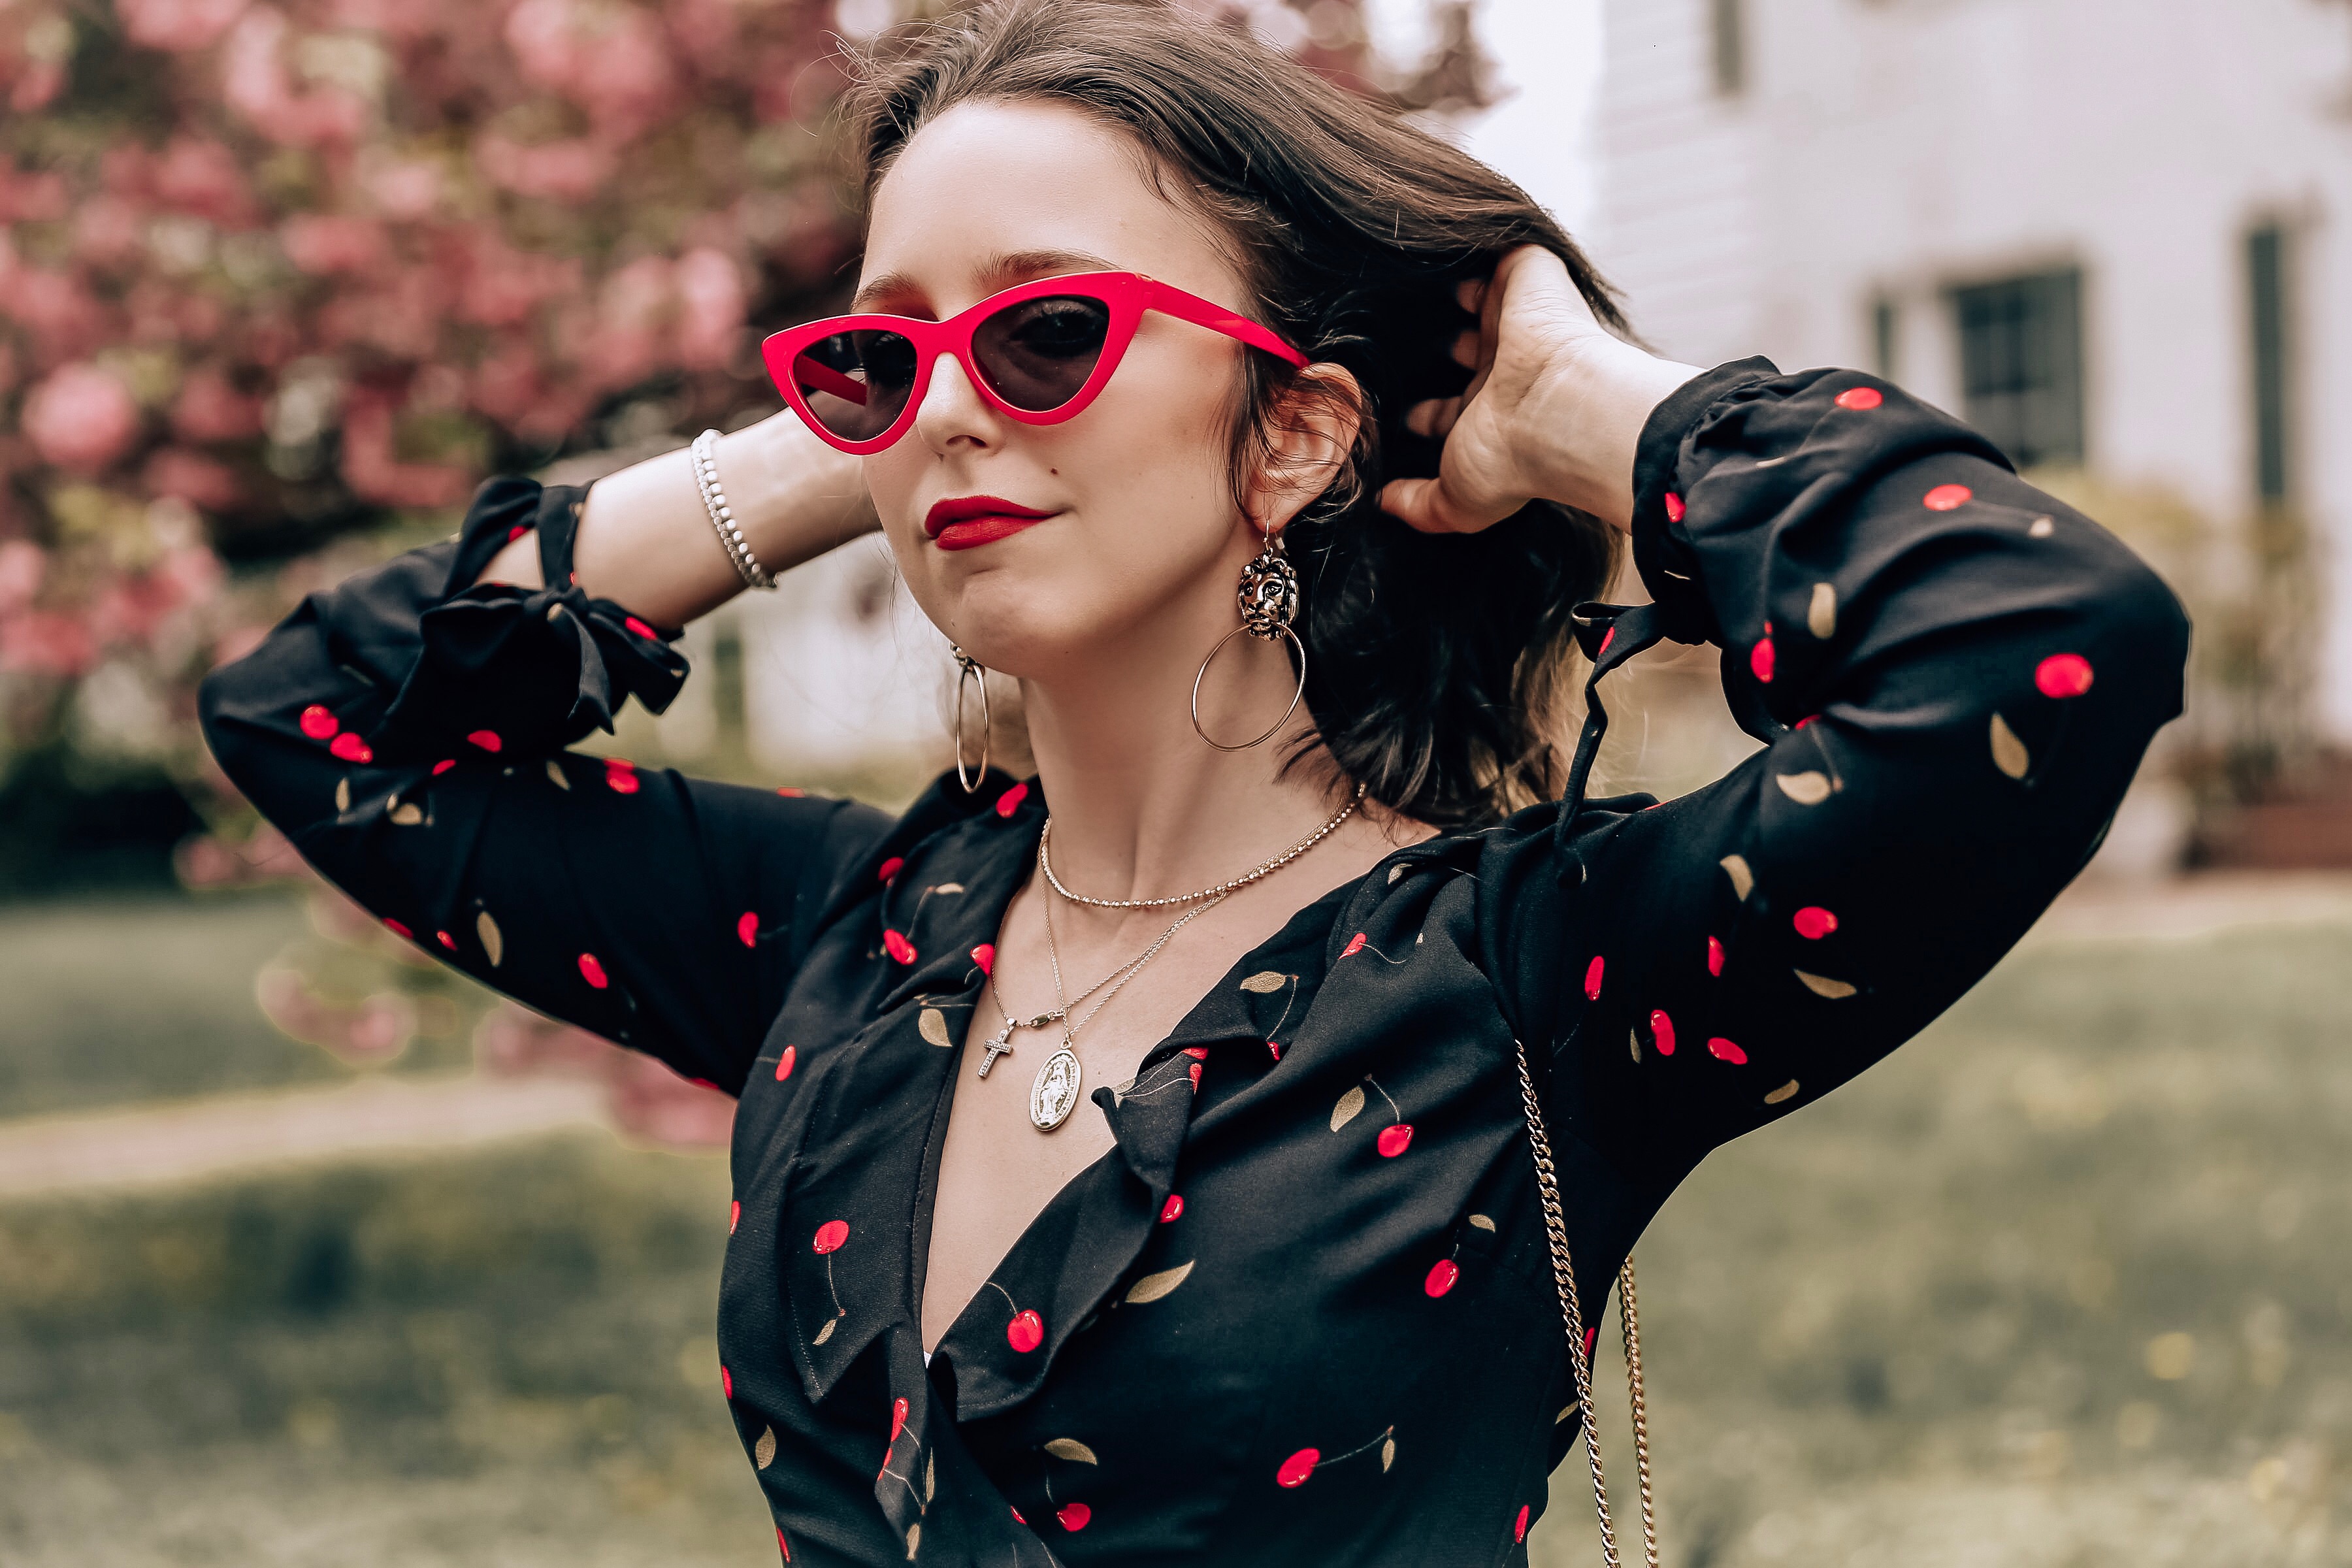 westchester county-blogger-spring-flowers-tobi-cherry dress-tobi earrings-red sunglasses